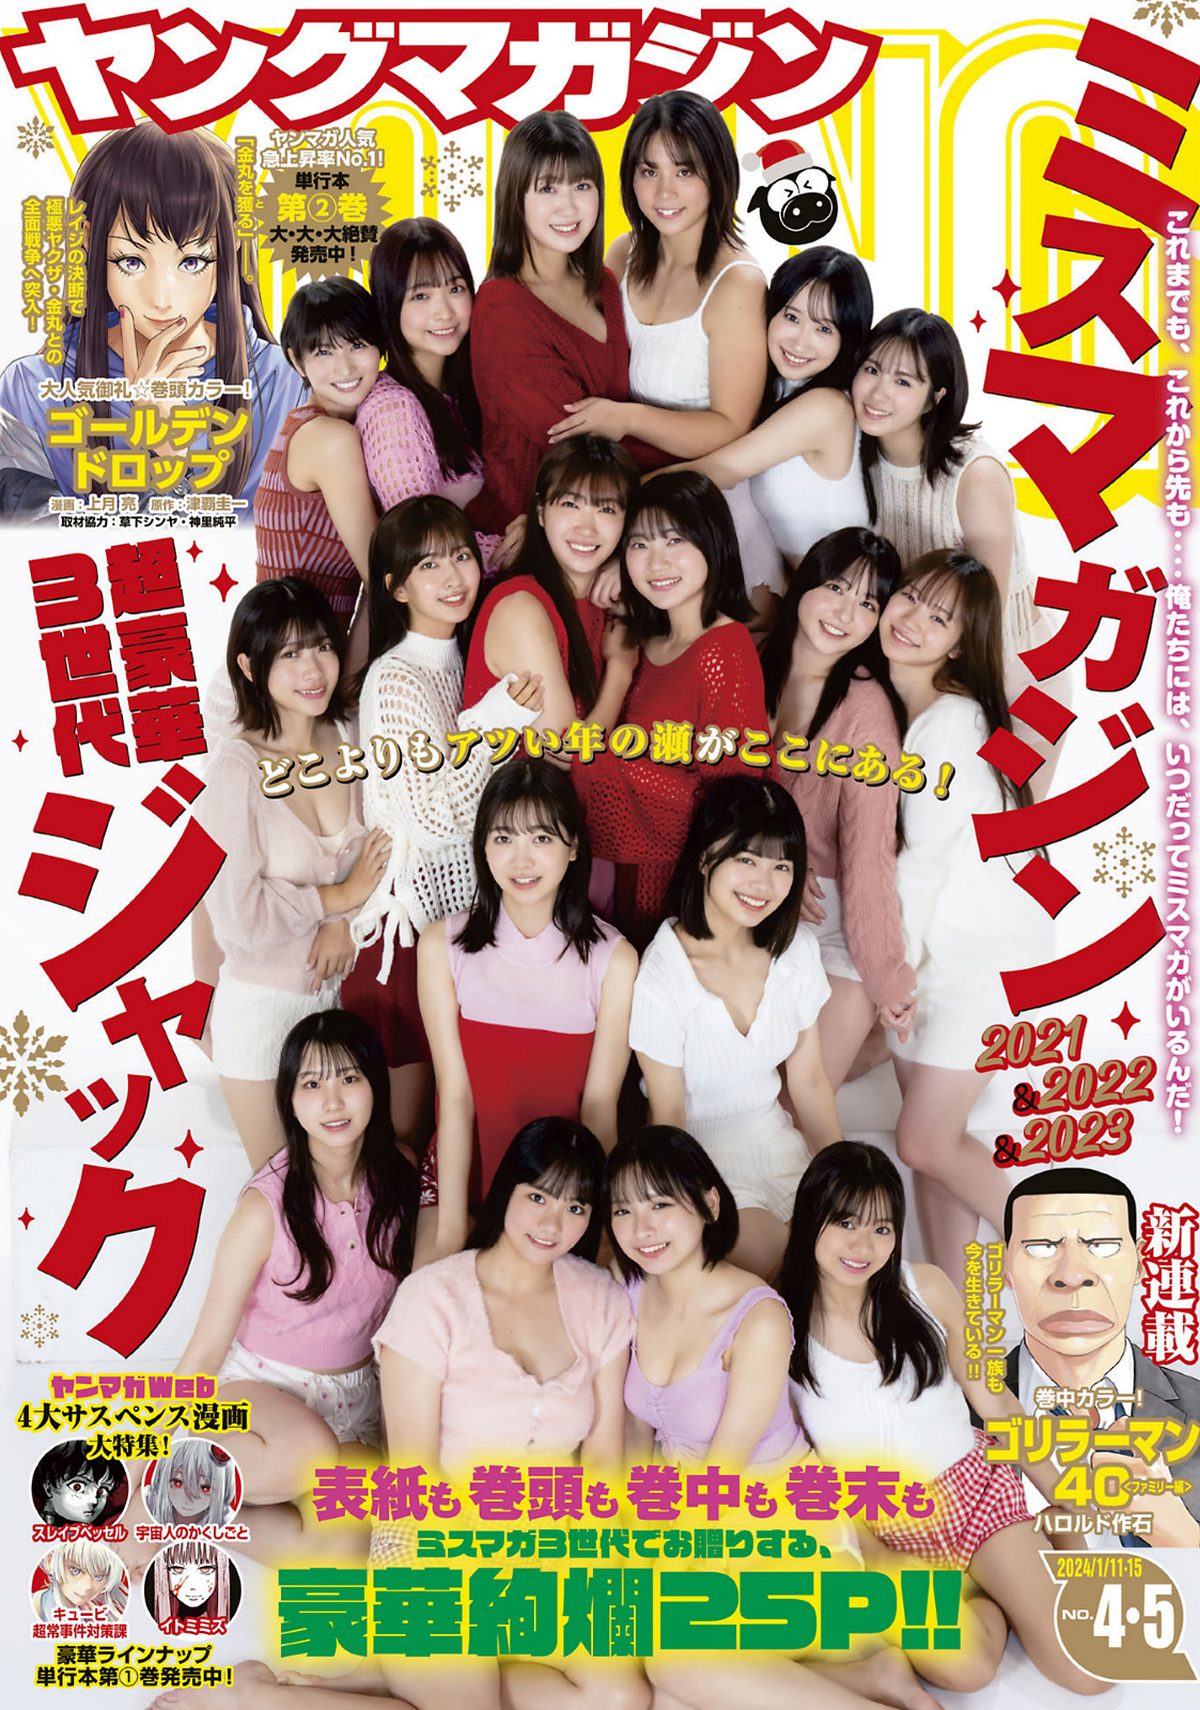 Young Magazine 2024 No 04 05 Maya Imamori 今森茉耶 0001 2519703774.jpg